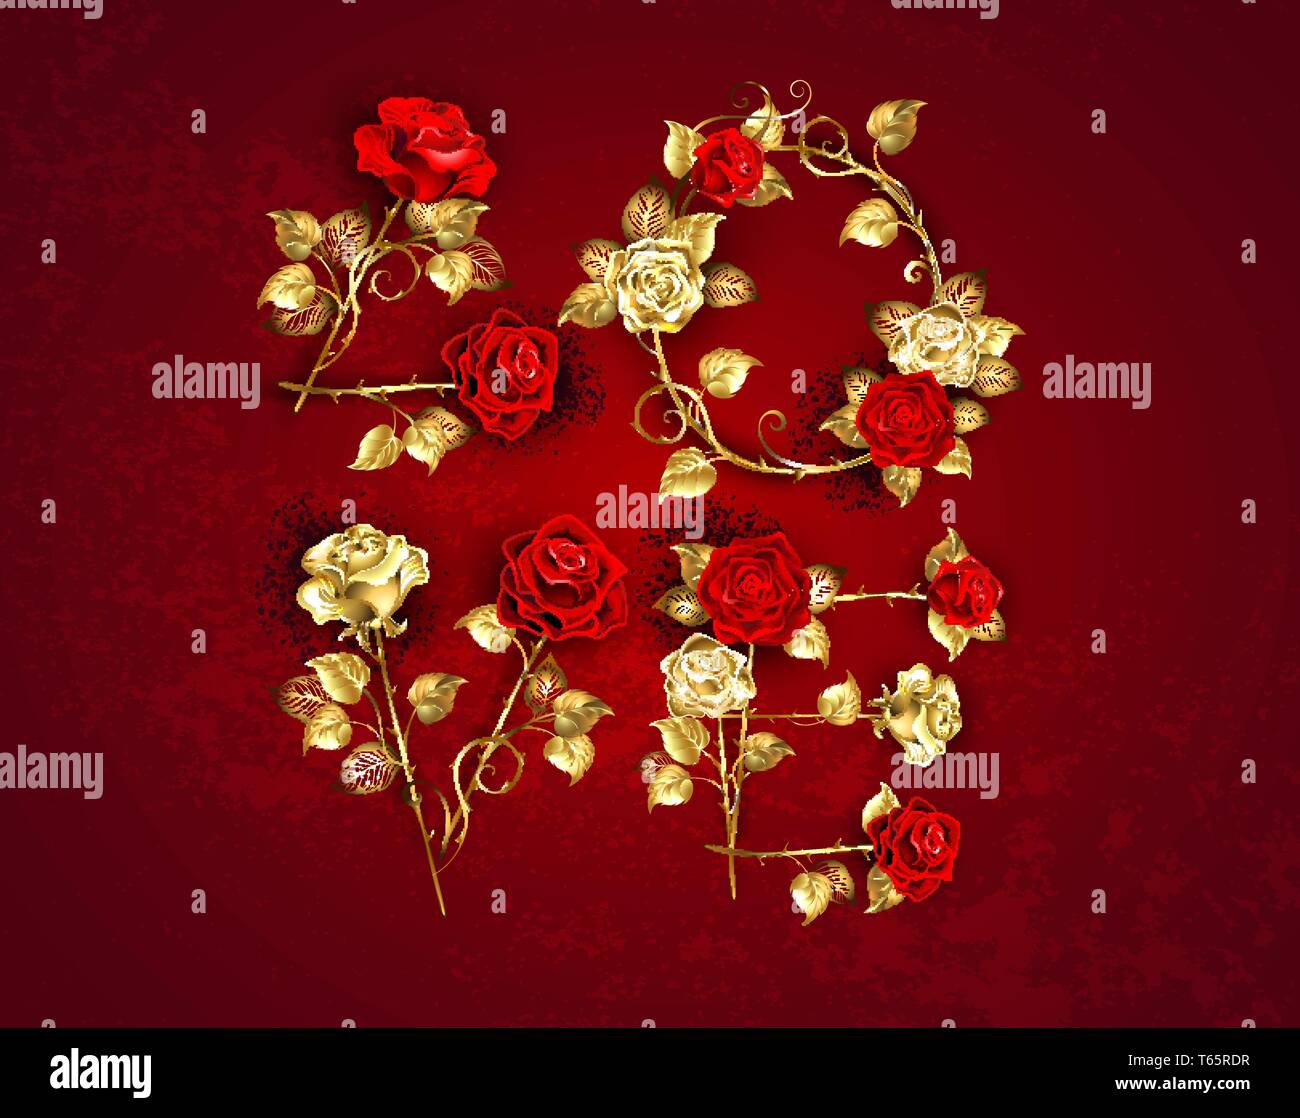 Kreative Inschrift Liebe von Schmuck Gold und rote Rosen mit gerader Stiele auf strukturierten Hintergrund. Stock Vektor